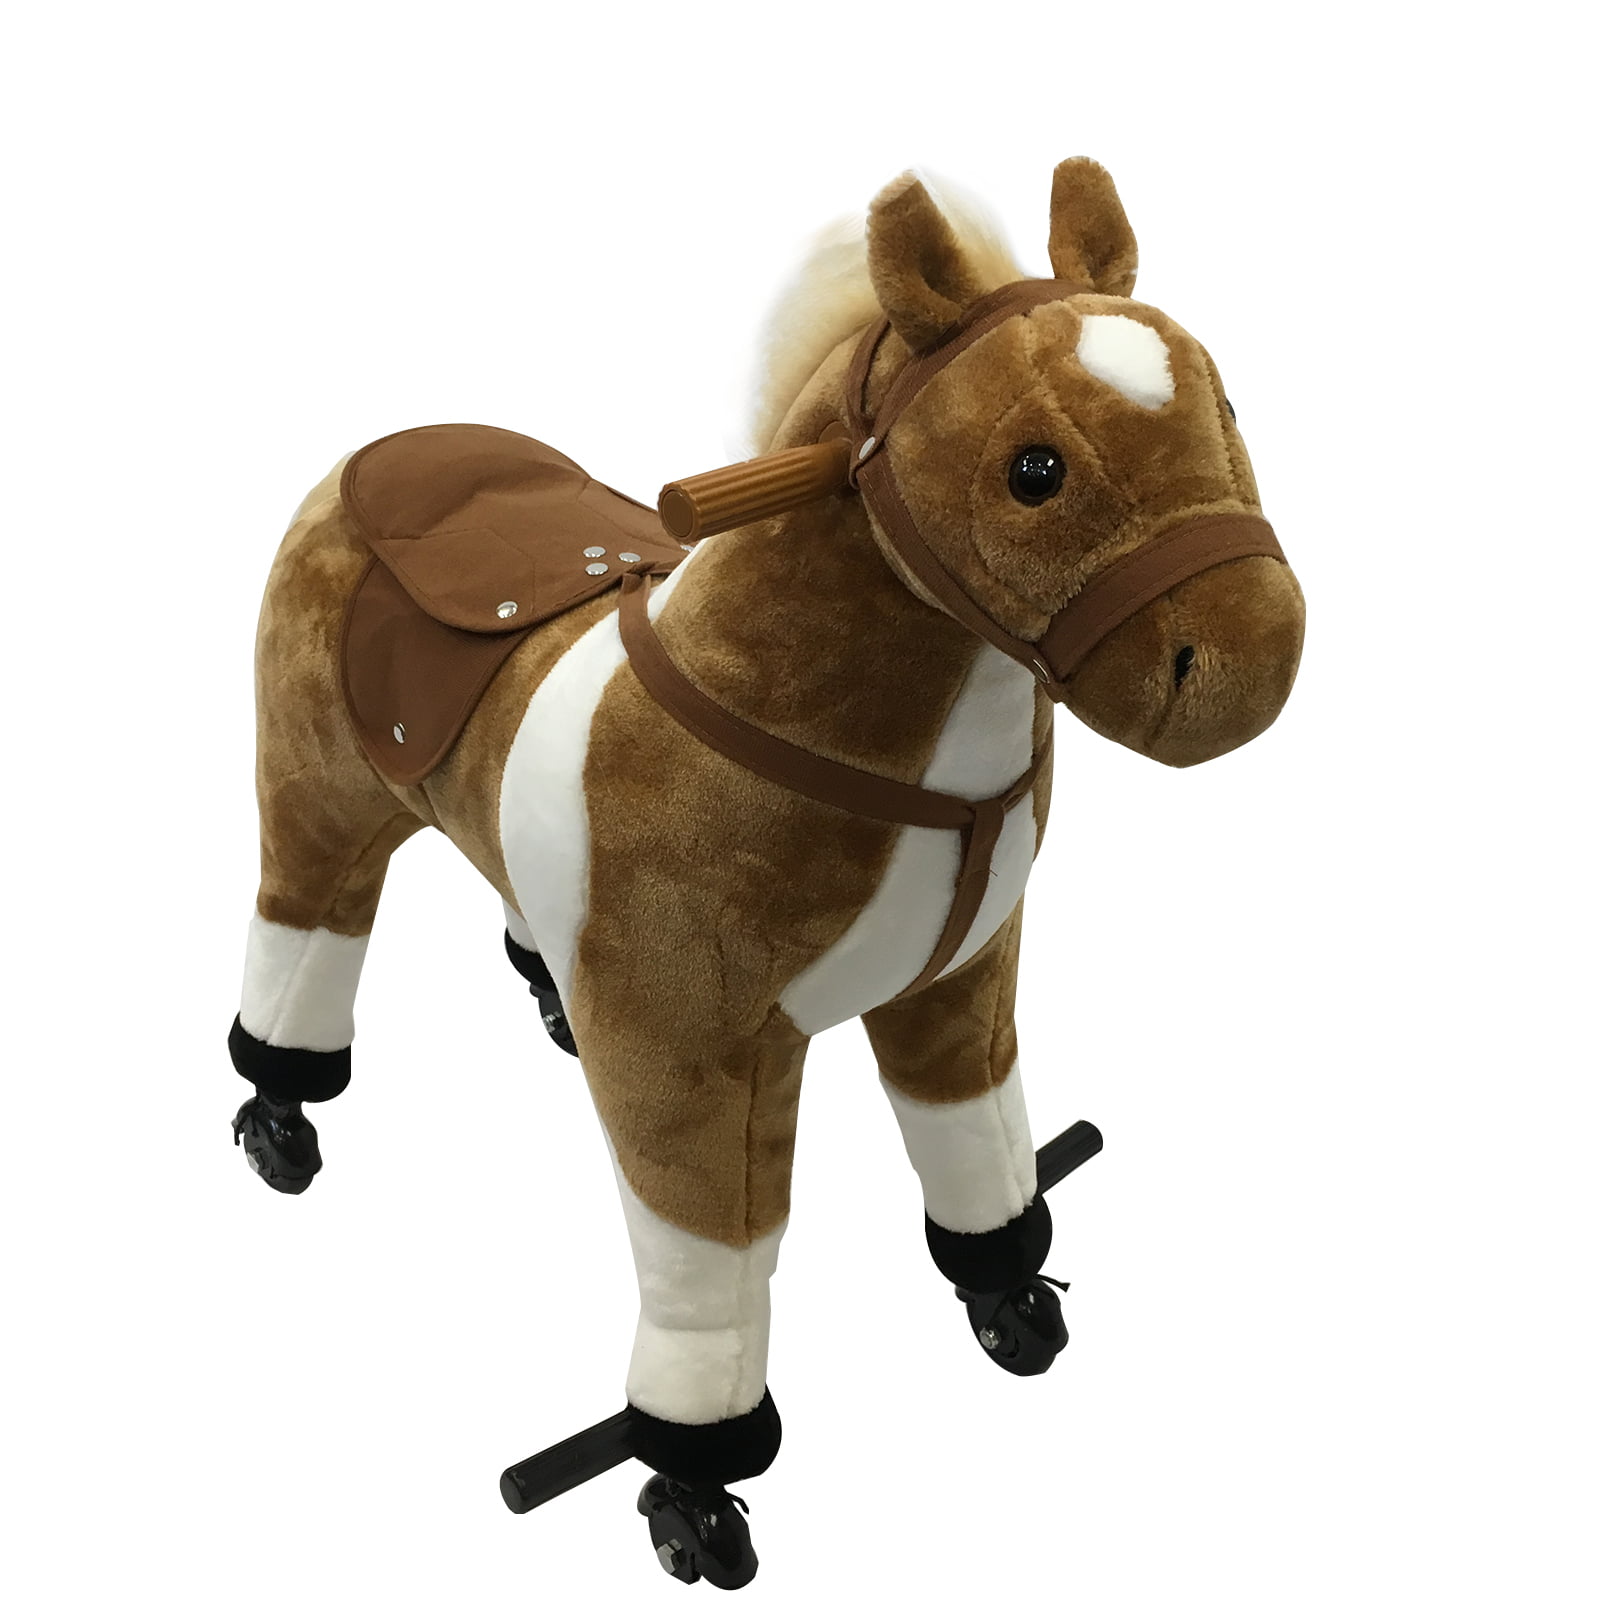 Qaba Extra Large Kids Plush Ride On Toy Walking Horse with 